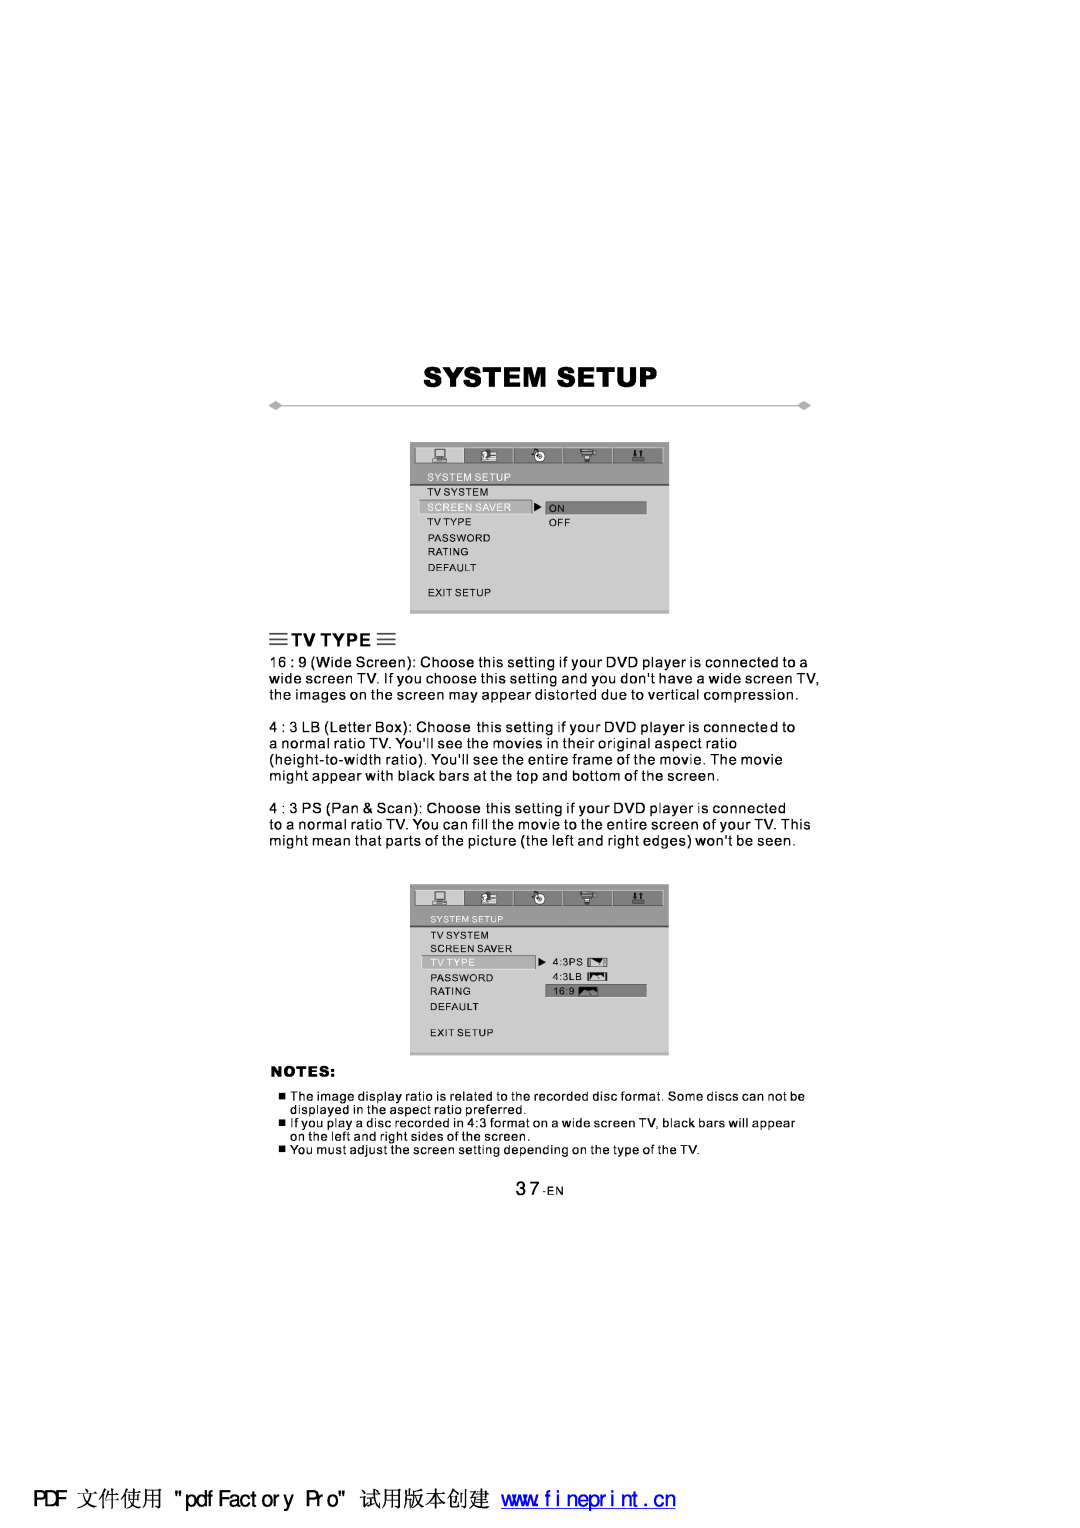 NextBase SDV97-AC manual 37-EN 